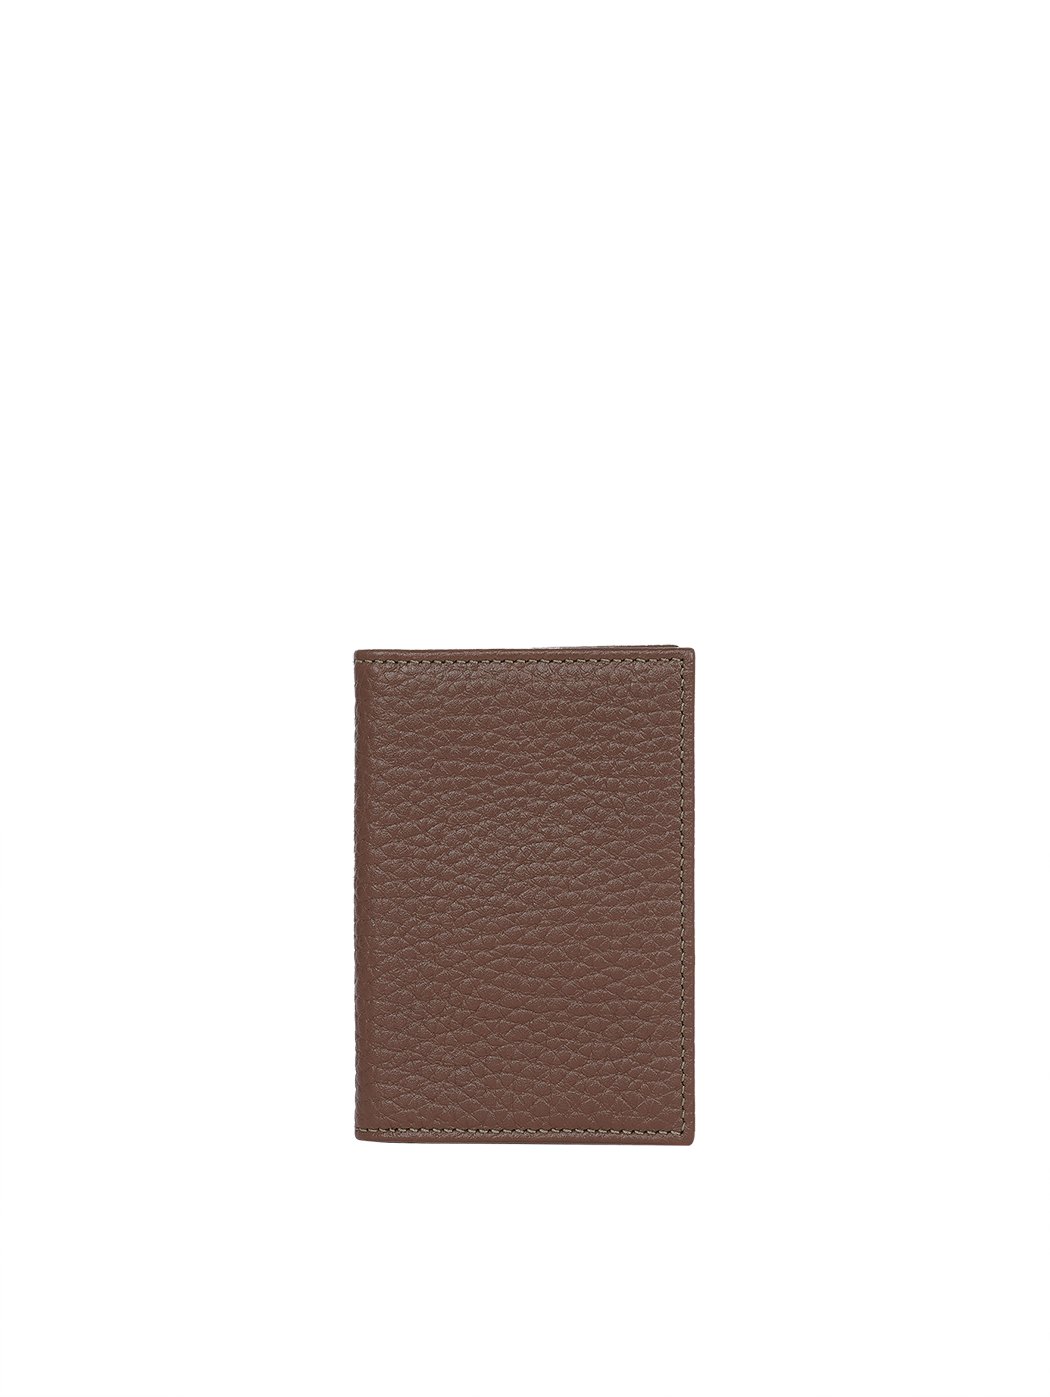 3 Pocket Leather Card Holder Dark brown